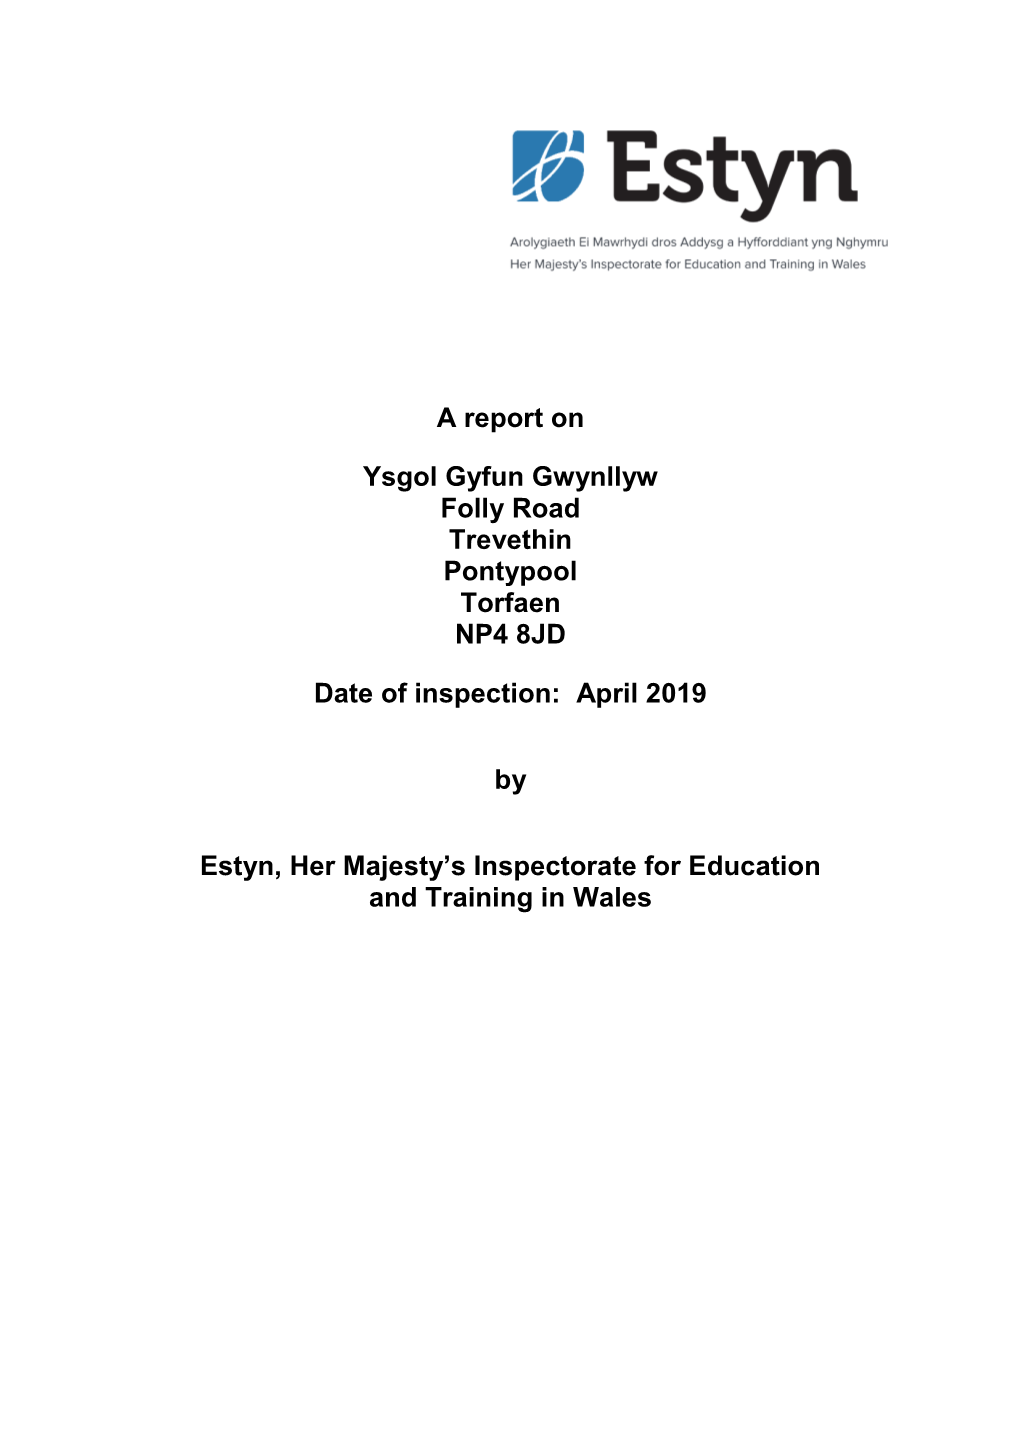 Inspection Report Ysgol Gyfun Gwynllyw 2019